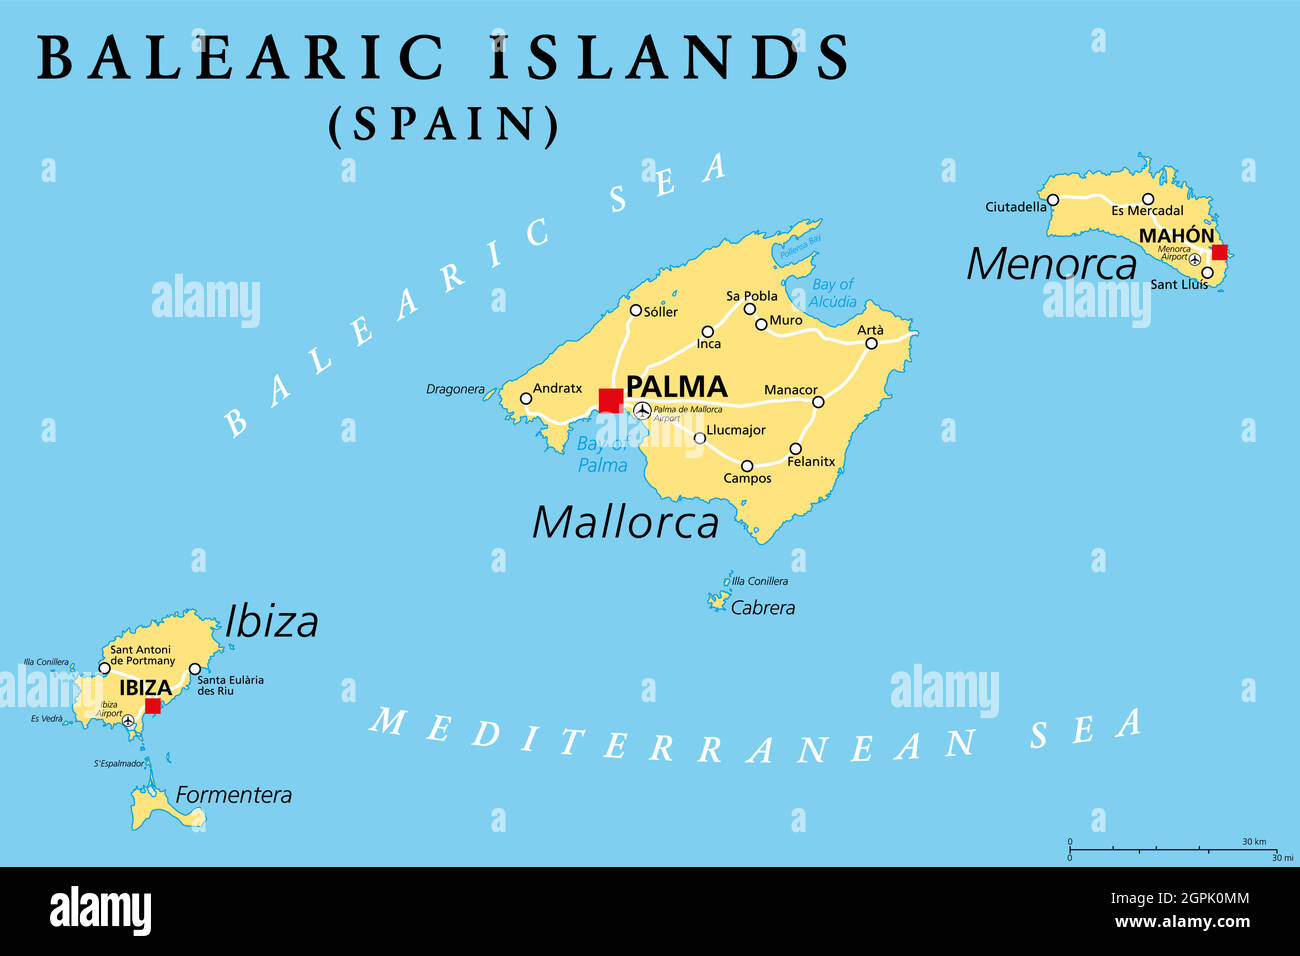 Cual es la capital de las islas baleares